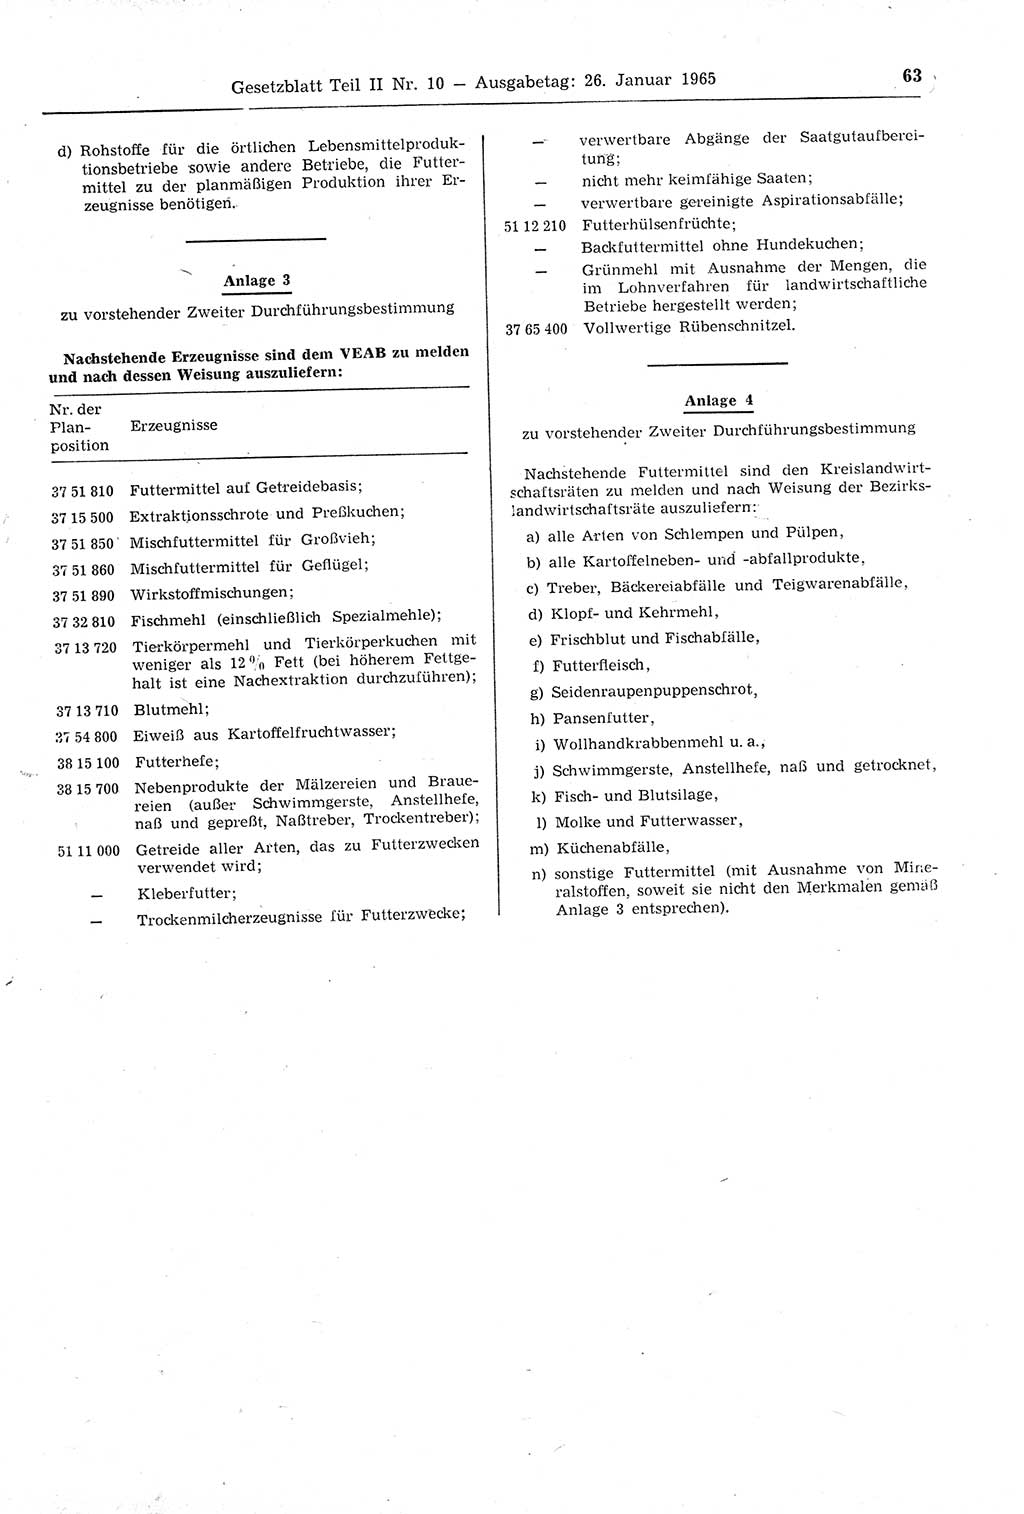 Gesetzblatt (GBl.) der Deutschen Demokratischen Republik (DDR) Teil ⅠⅠ 1965, Seite 63 (GBl. DDR ⅠⅠ 1965, S. 63)